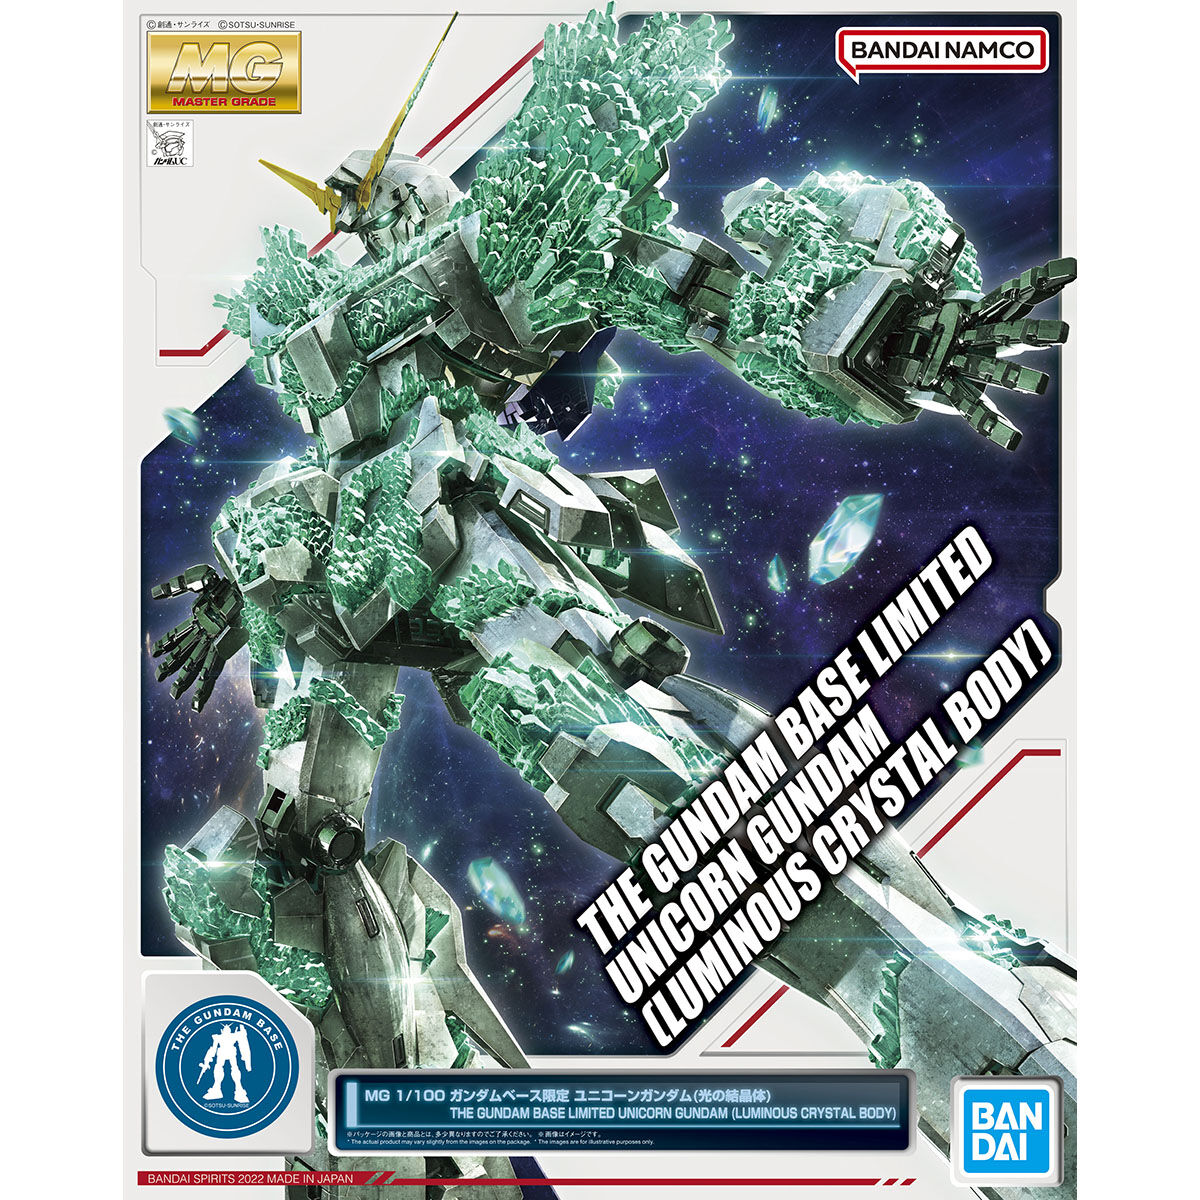 Gundam base limited item MG 1/100 Gundam Base Limited Unicorn Gundam (Crystal of Light)